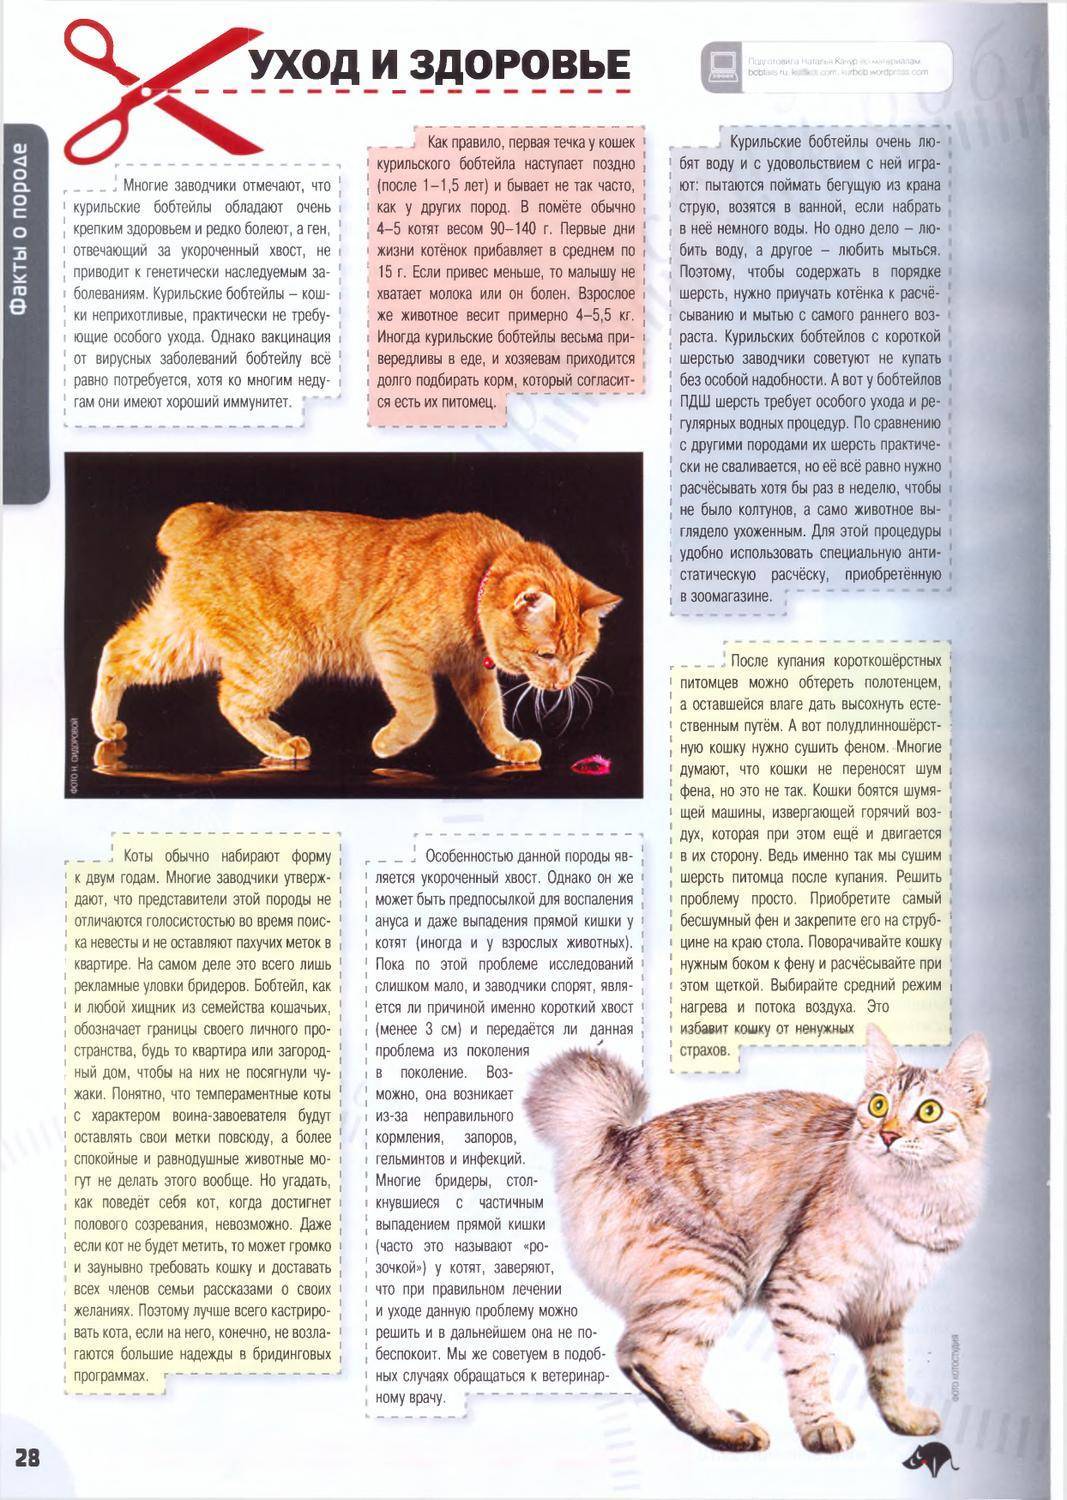 Курильские бобтейлы: описание породы кошек, характер, особенности ухода, история